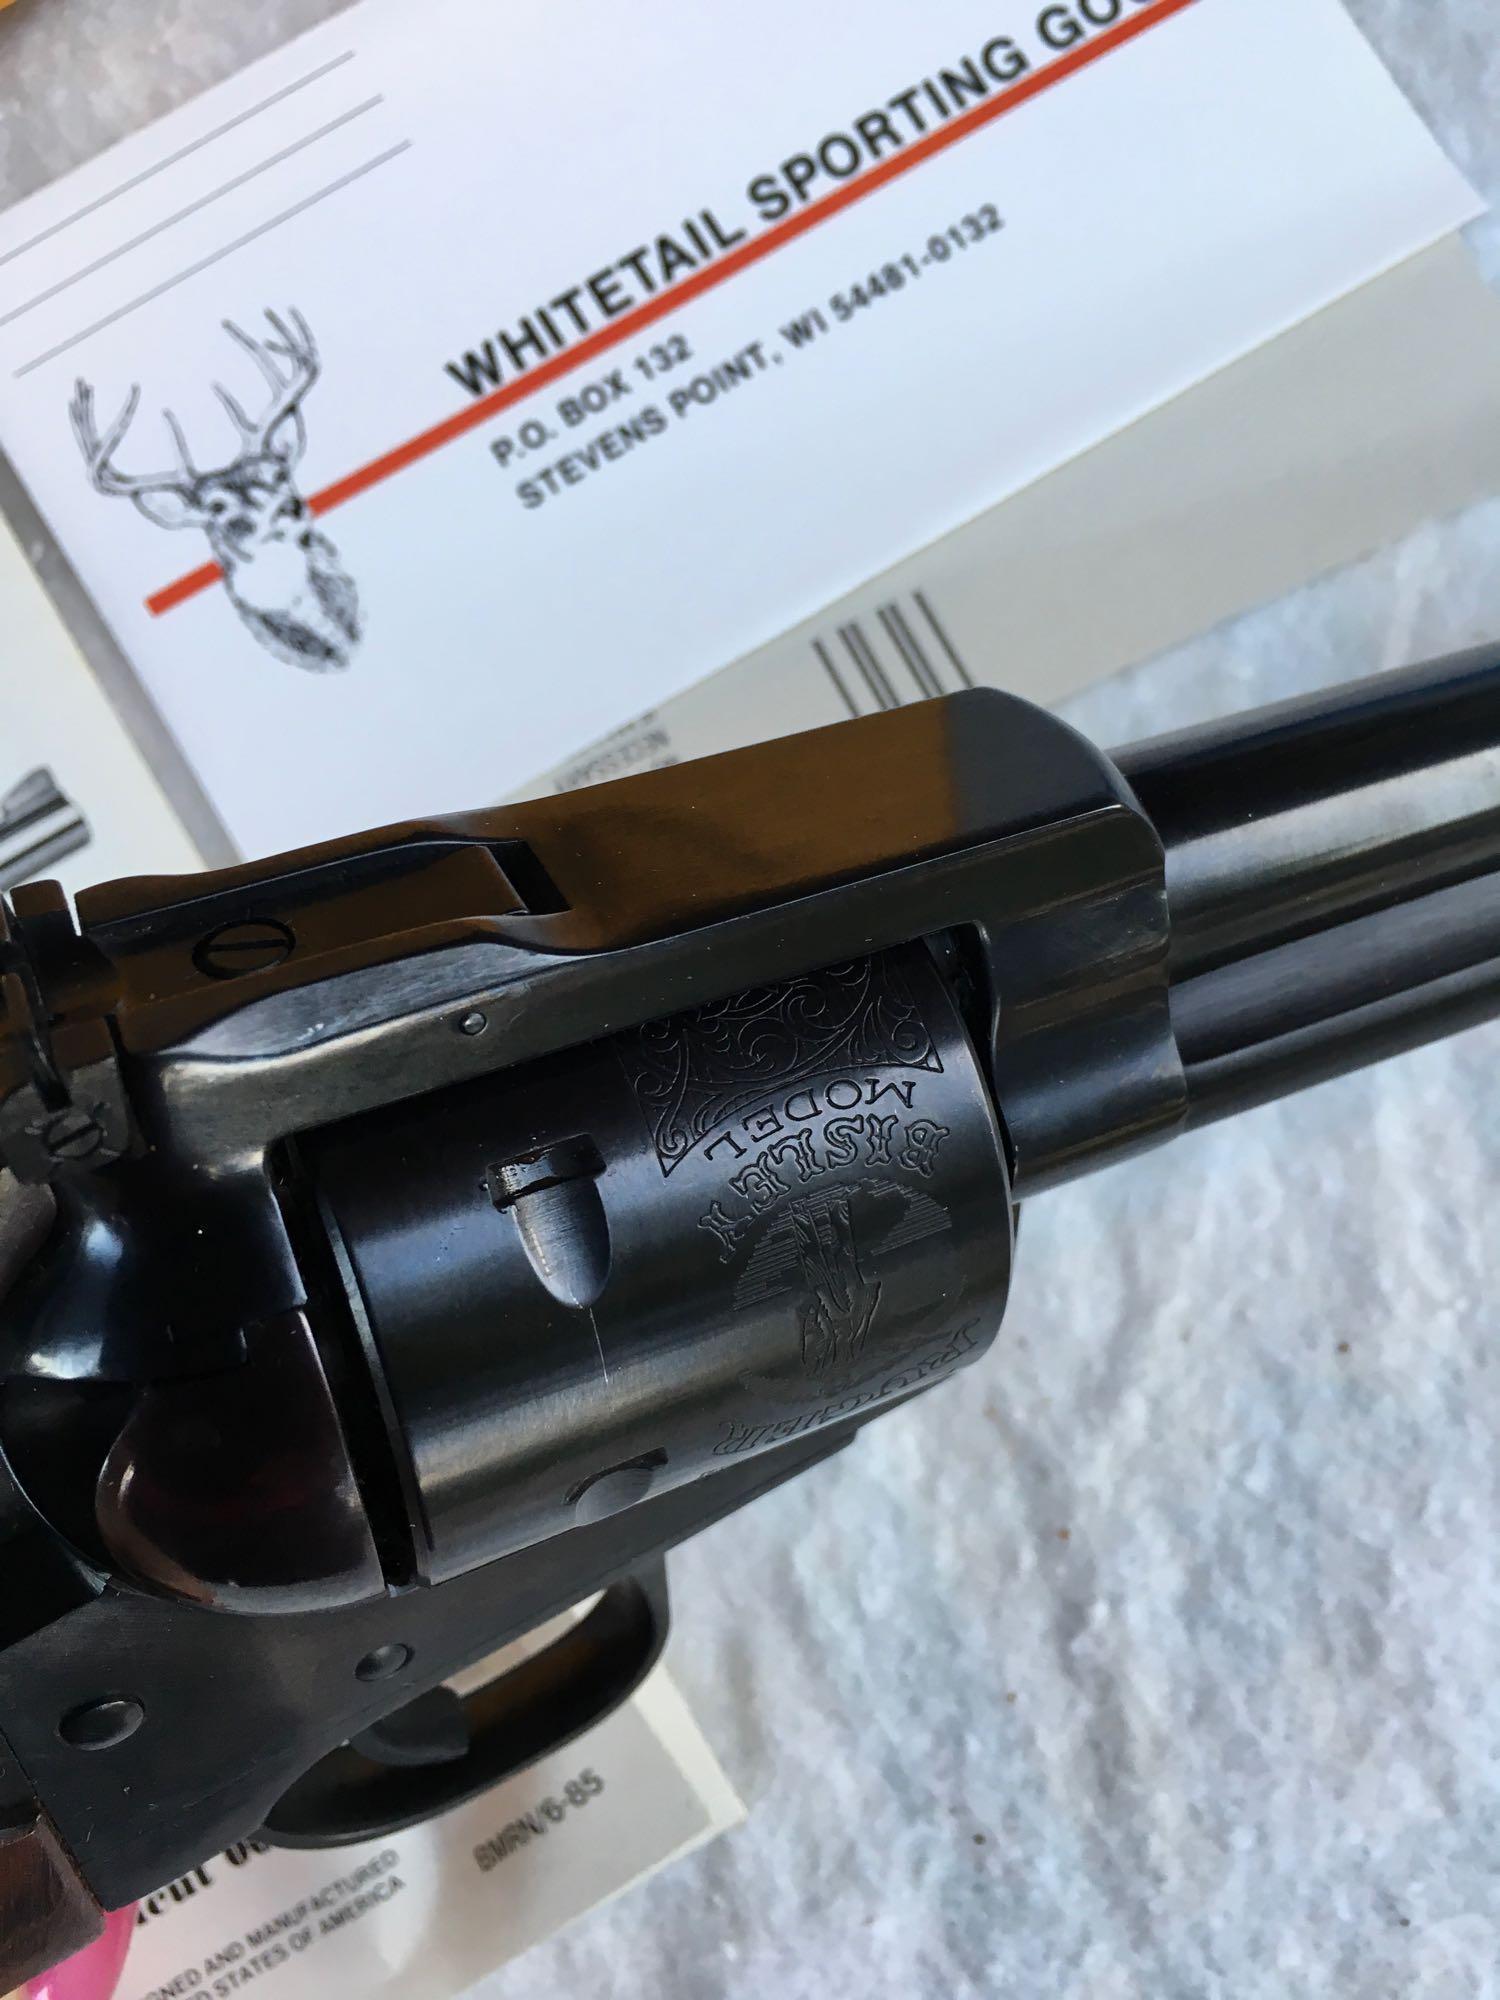 Ruger Bisley .44 Mag Black Hawk Revolver, Serial # 85-51254